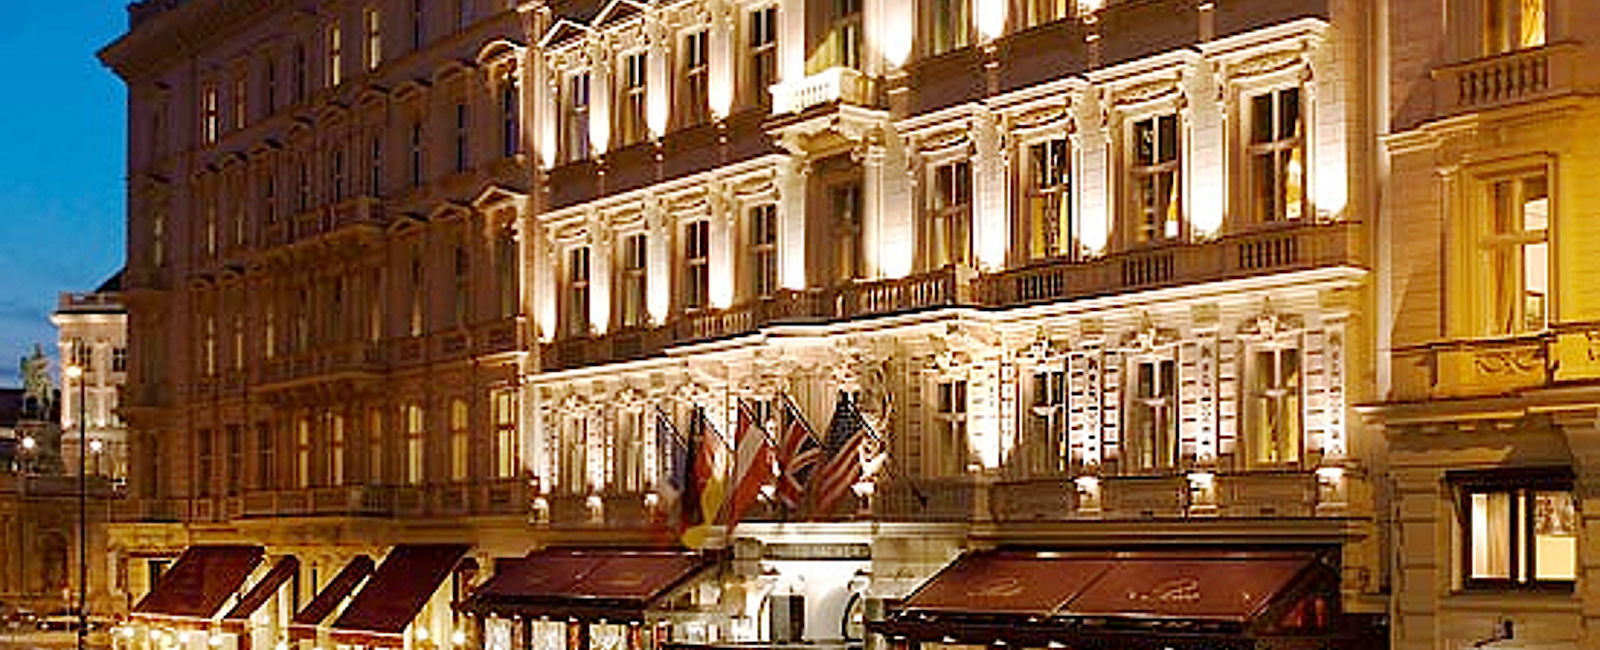 VERY SPECIAL HOTEL
 Hotel Sacher Wien 
 Wiege der Wiener Gastlichkeit 